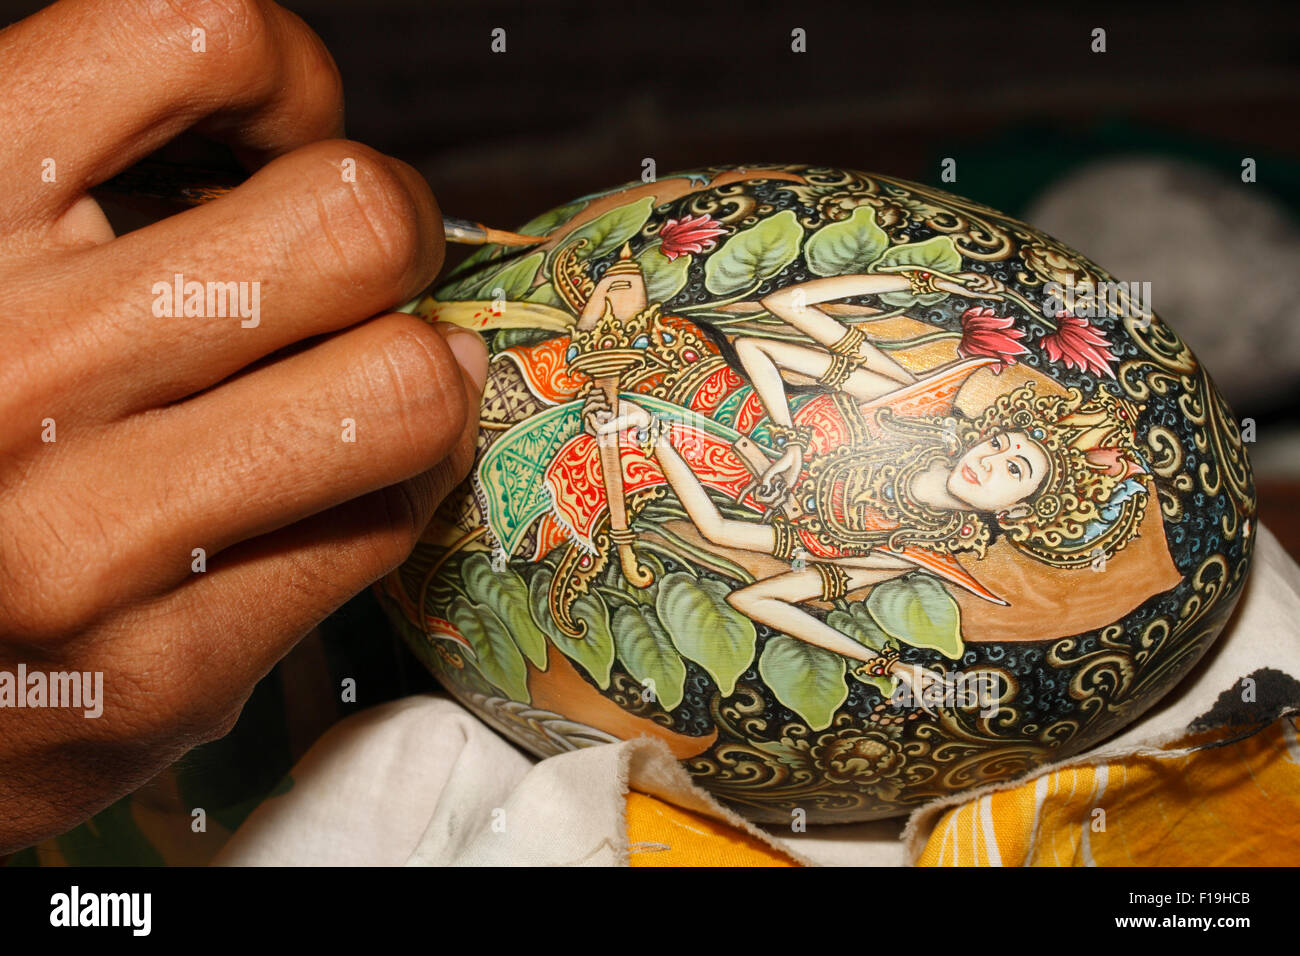 Px41770-D. peinture artiste œuf d'autruche. Superbe artisans de toutes sortes se trouvent dans la région d'Ubud. Bali, Indonésie. Banque D'Images